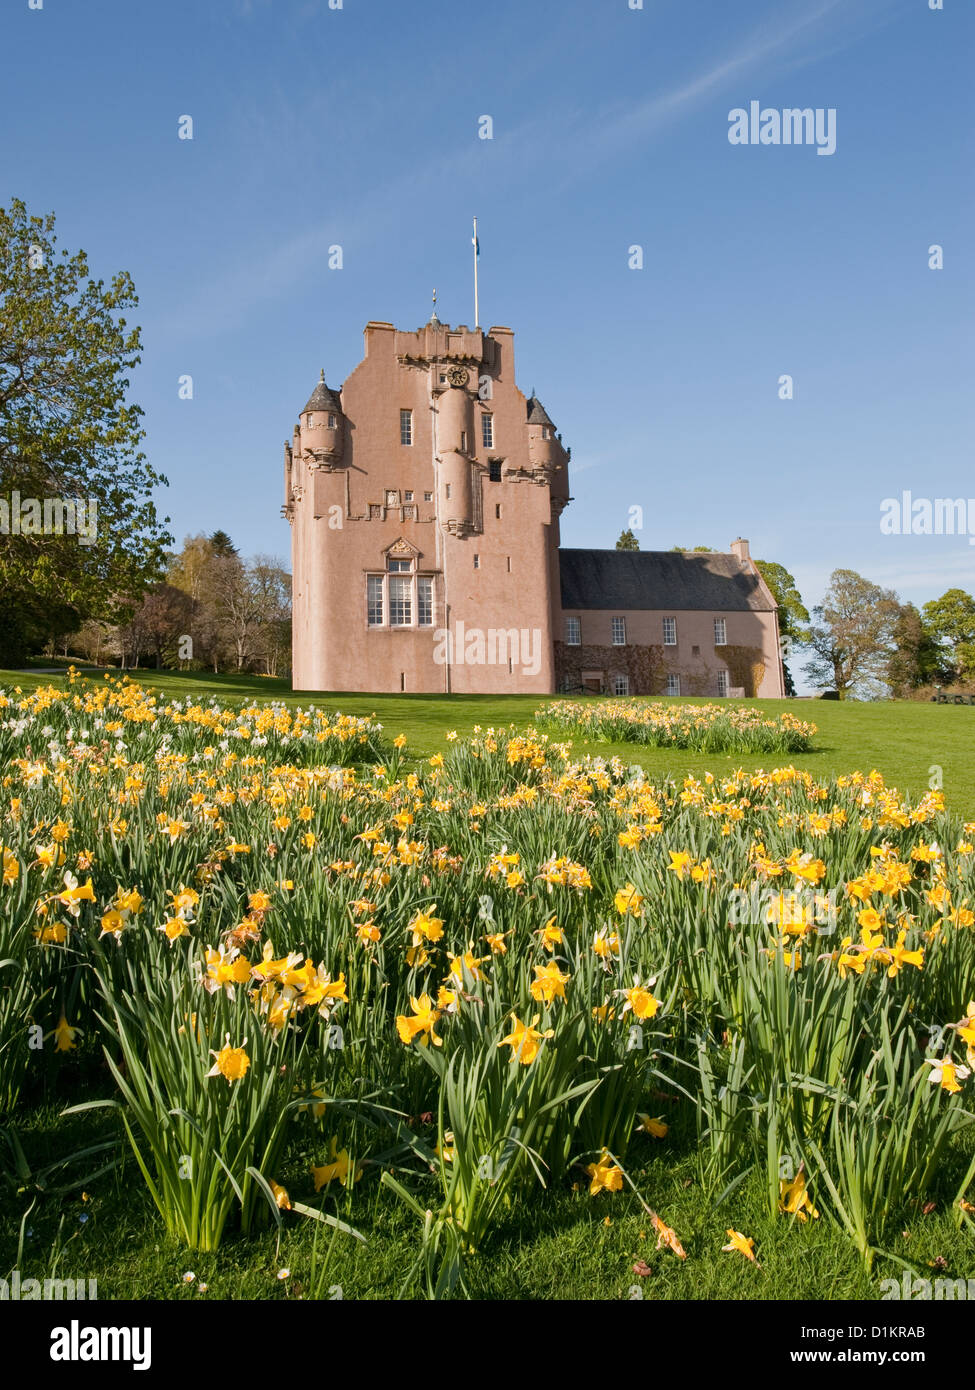 Le Château de Crathes et des jonquilles dans le jardin. L'Aberdeenshire, Ecosse Banque D'Images